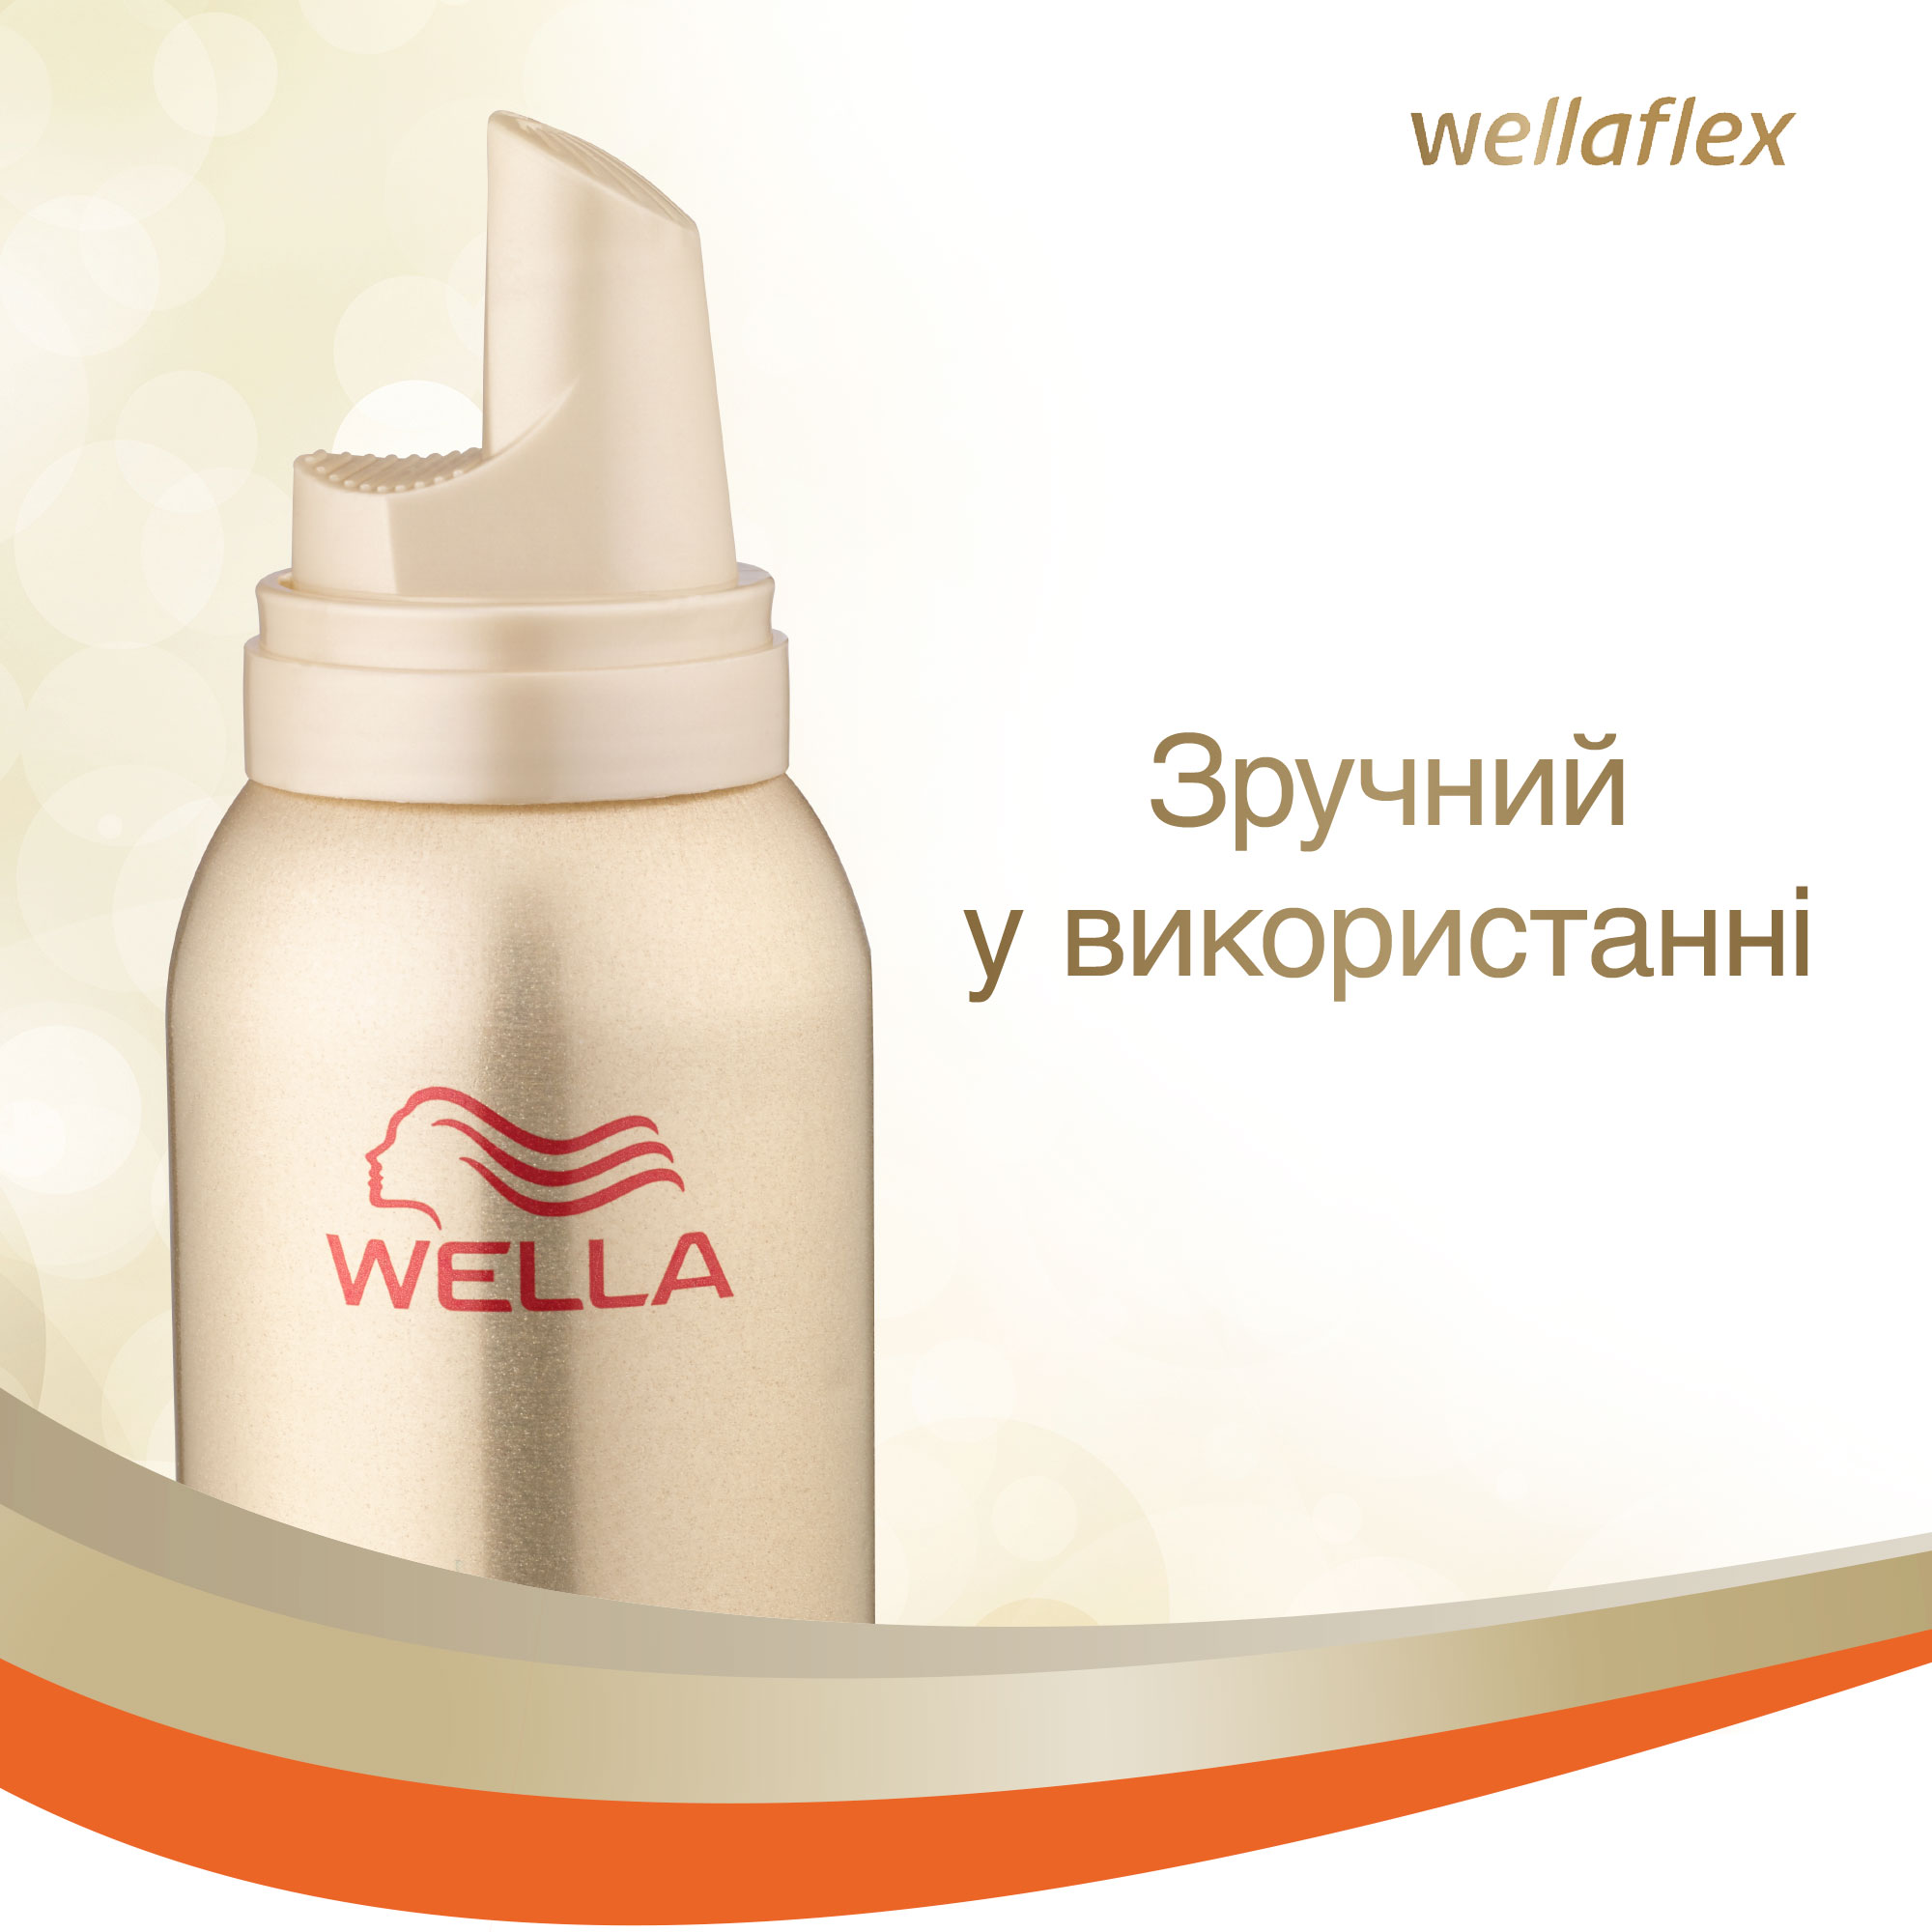 Мусс для волос Wellaflex Контроль над непослушными волосами Экстрасильной фиксации, 200 мл - фото 2